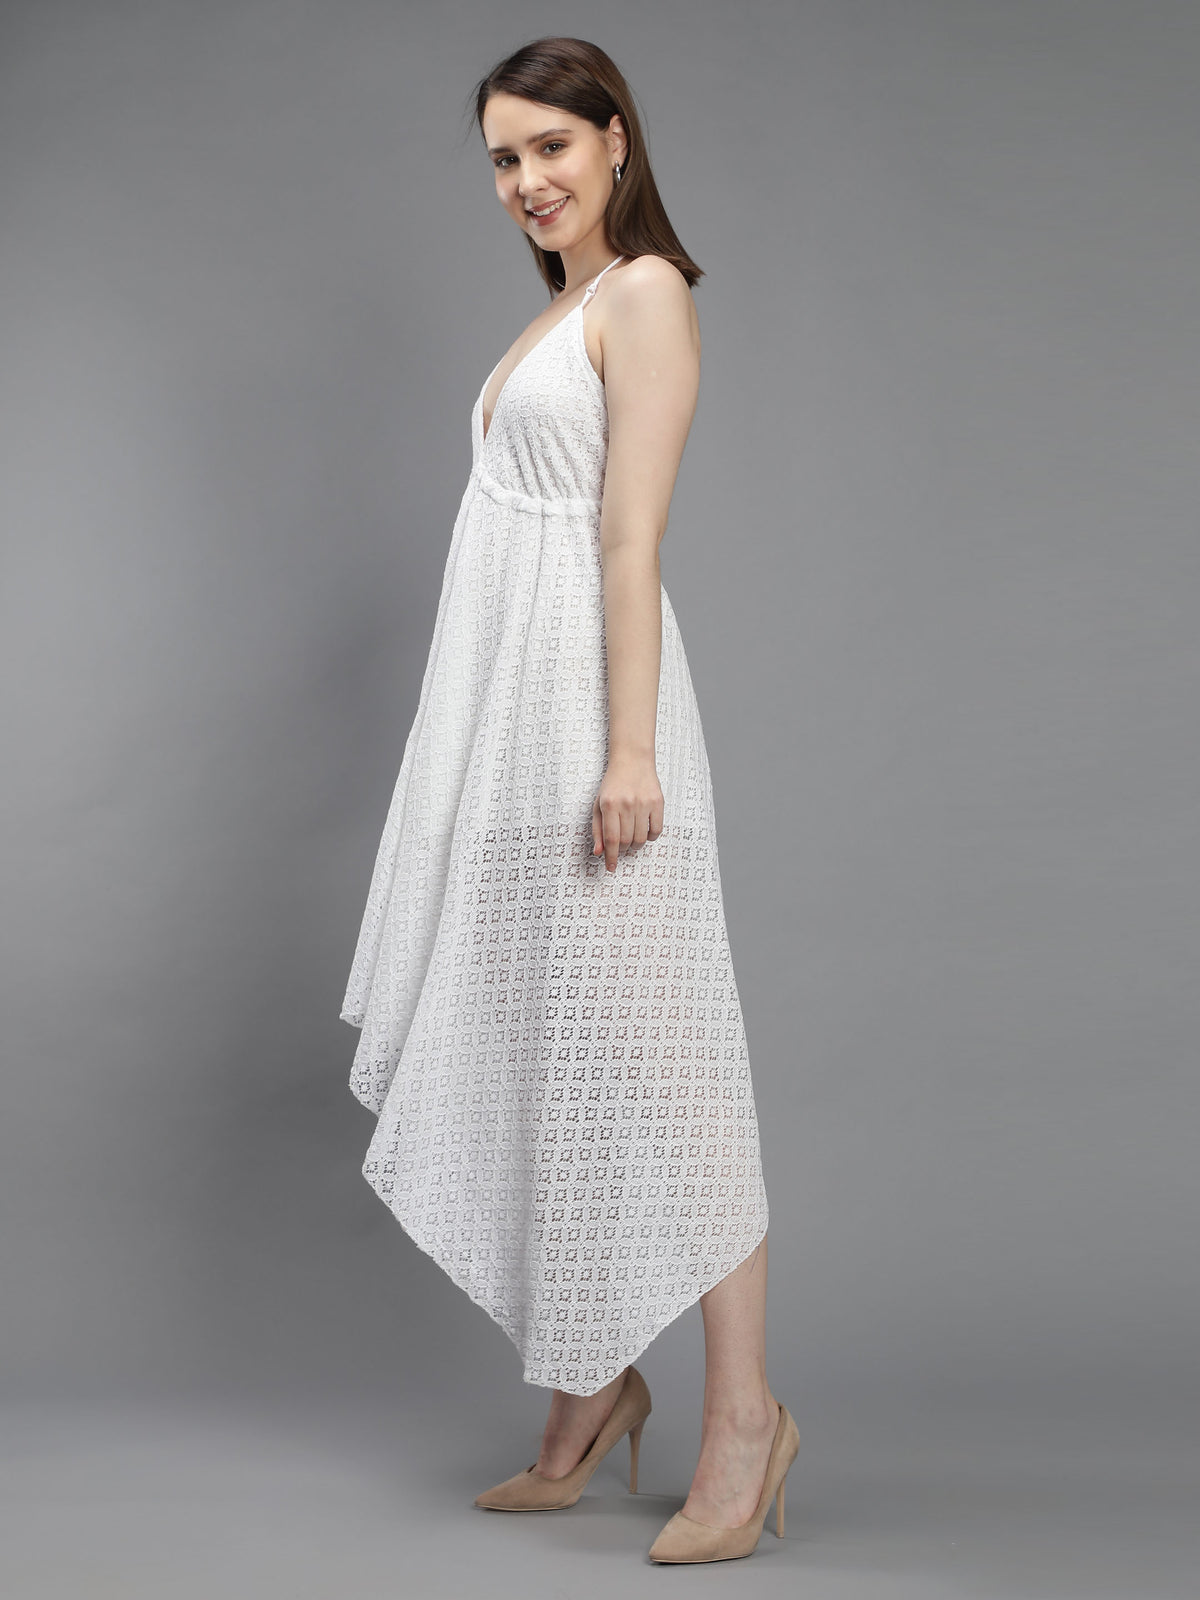 White Lace Long Beachwear Dress Aditi Wasan